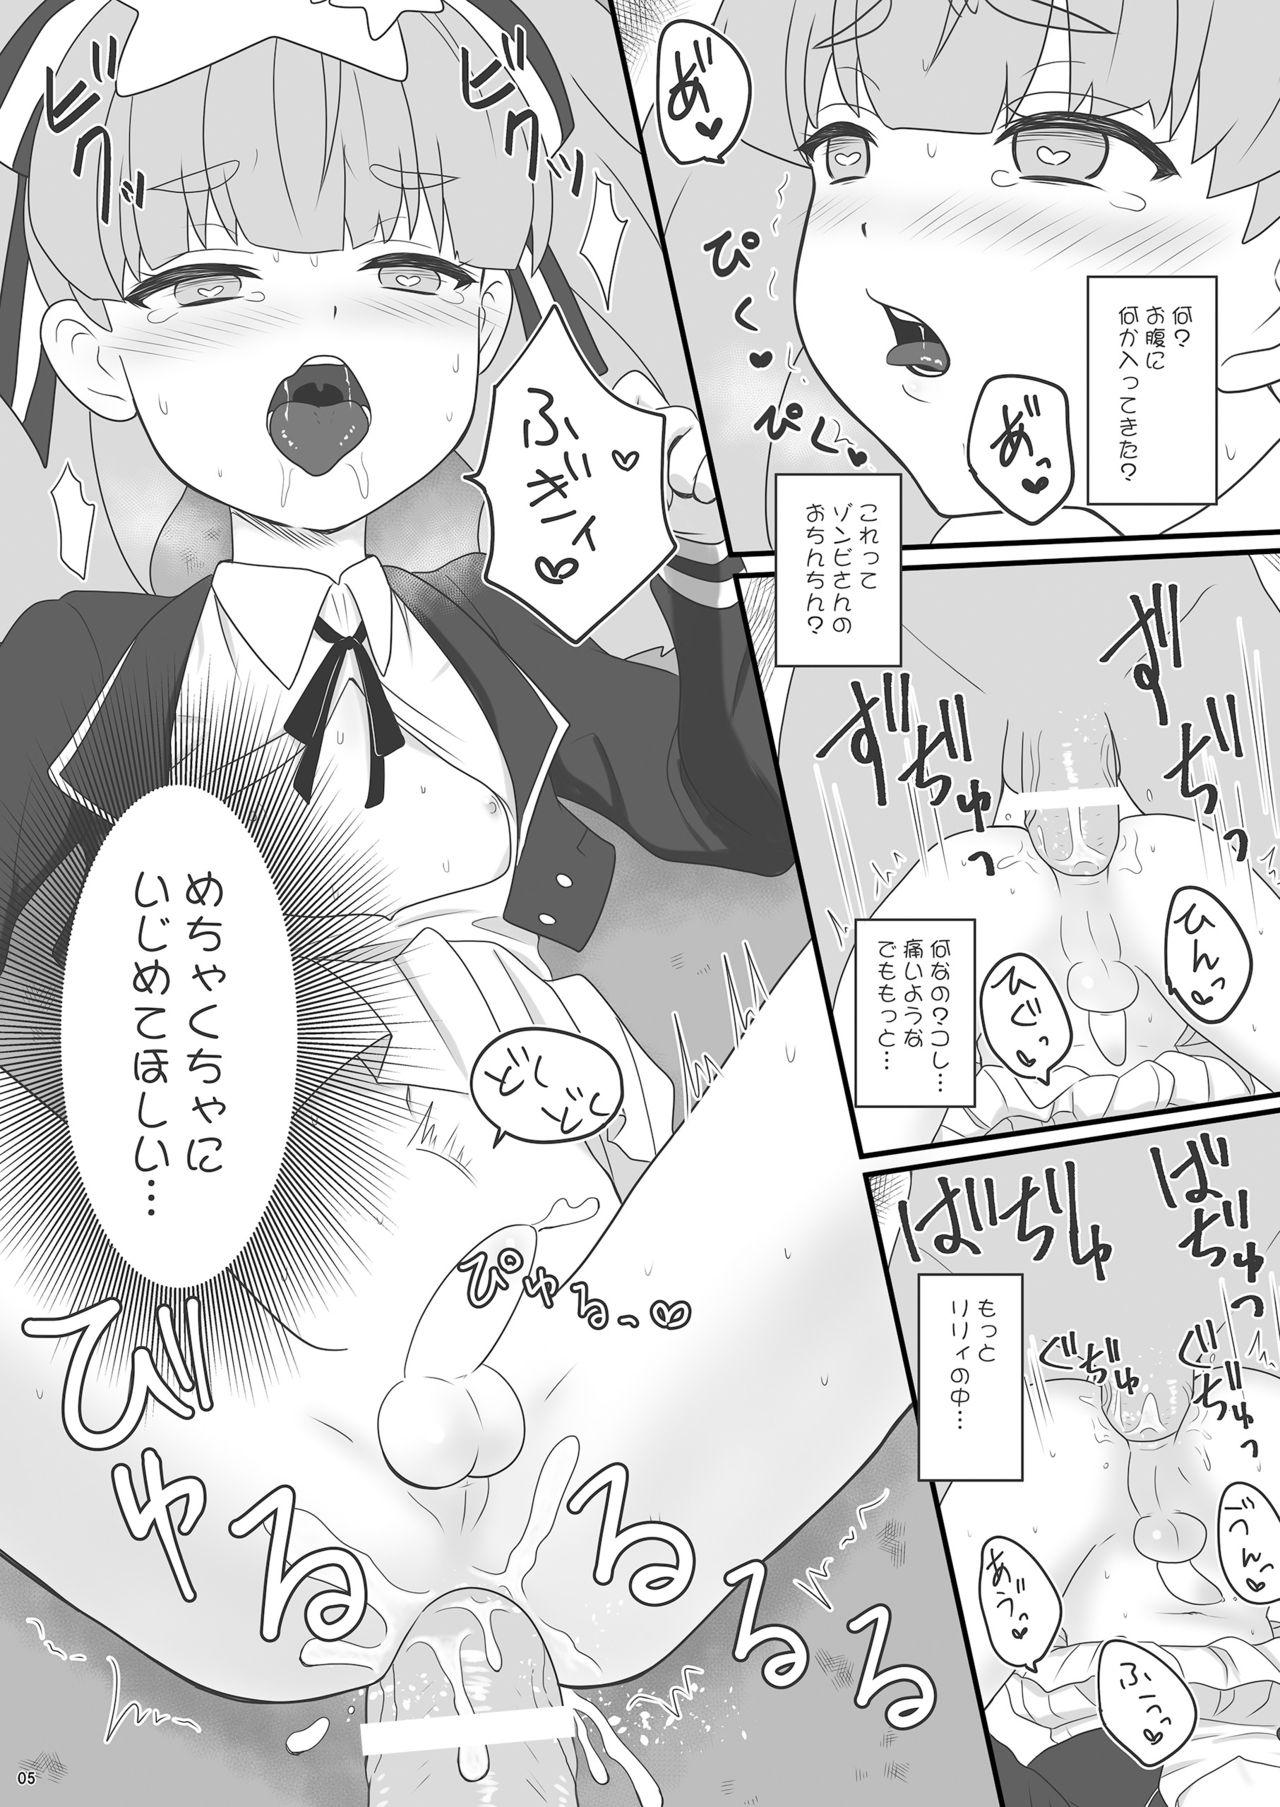 Escort Zonsagariryi-chan ga zonbi ni tane tsuke sa reru manga - Zombie land saga Sapphic Erotica - Page 5